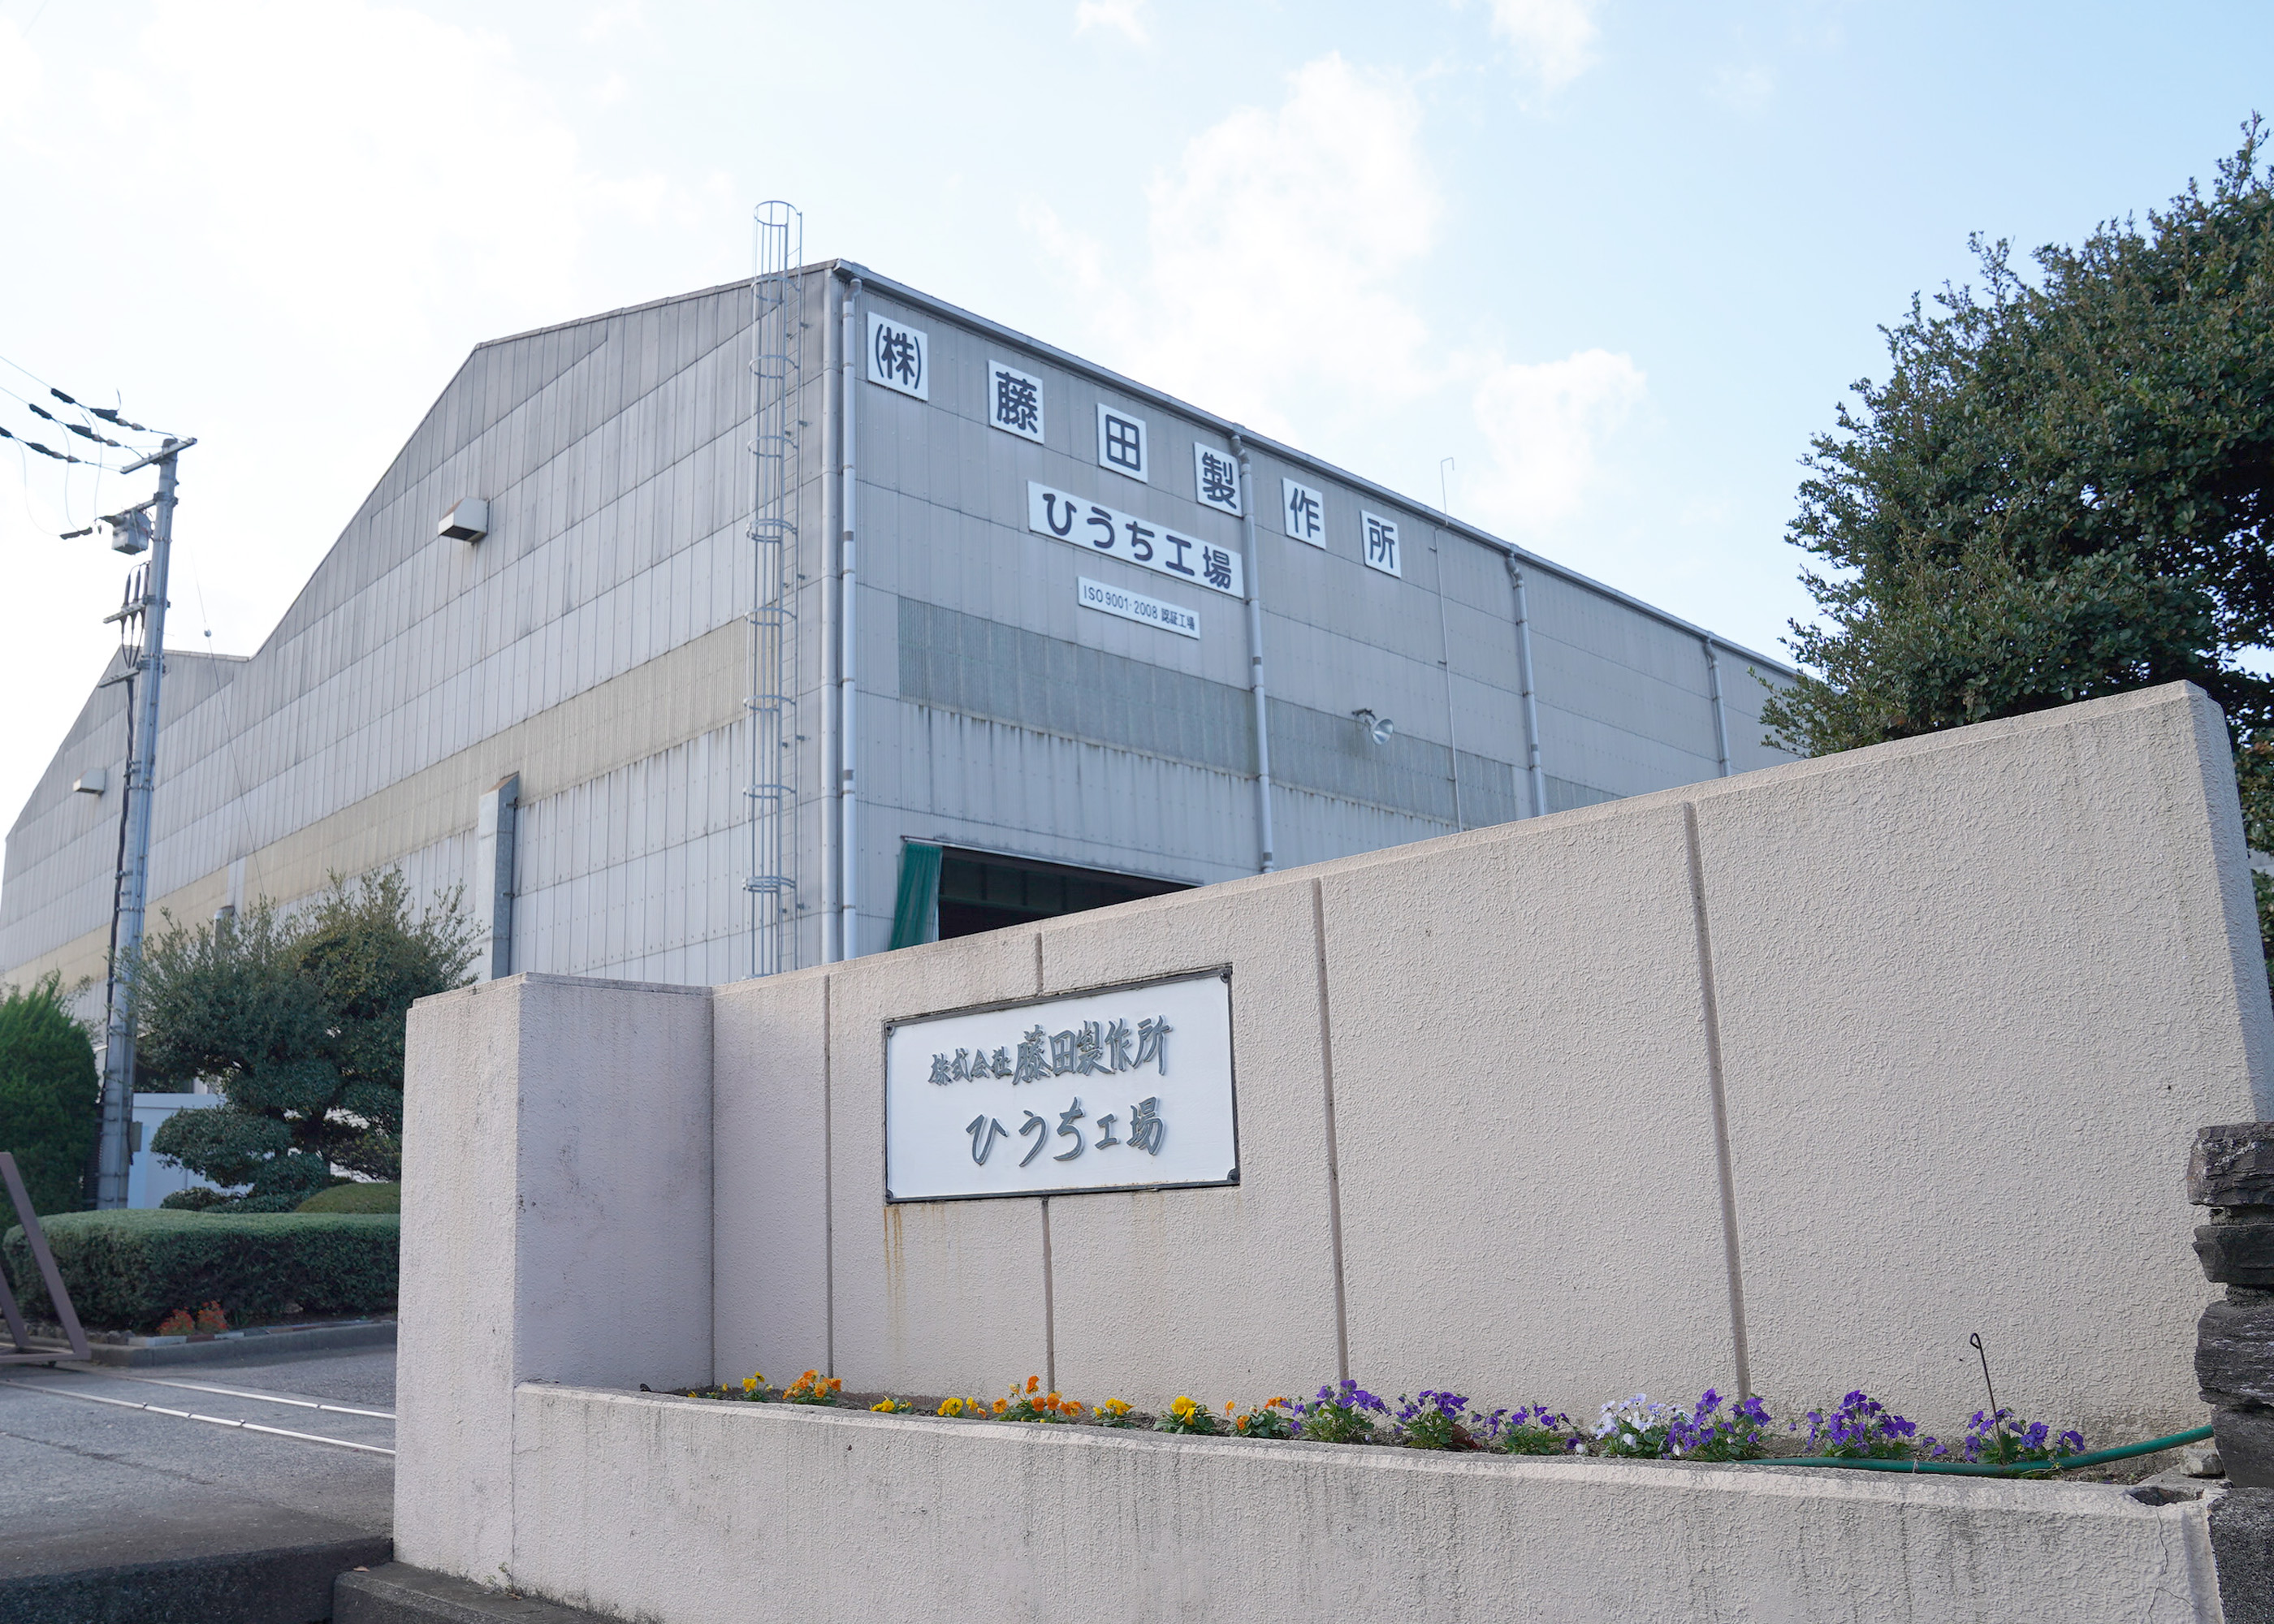 1936年4月に創業し、ひうち工場と港工場の2つの拠点を構える株式会社藤田製作所。